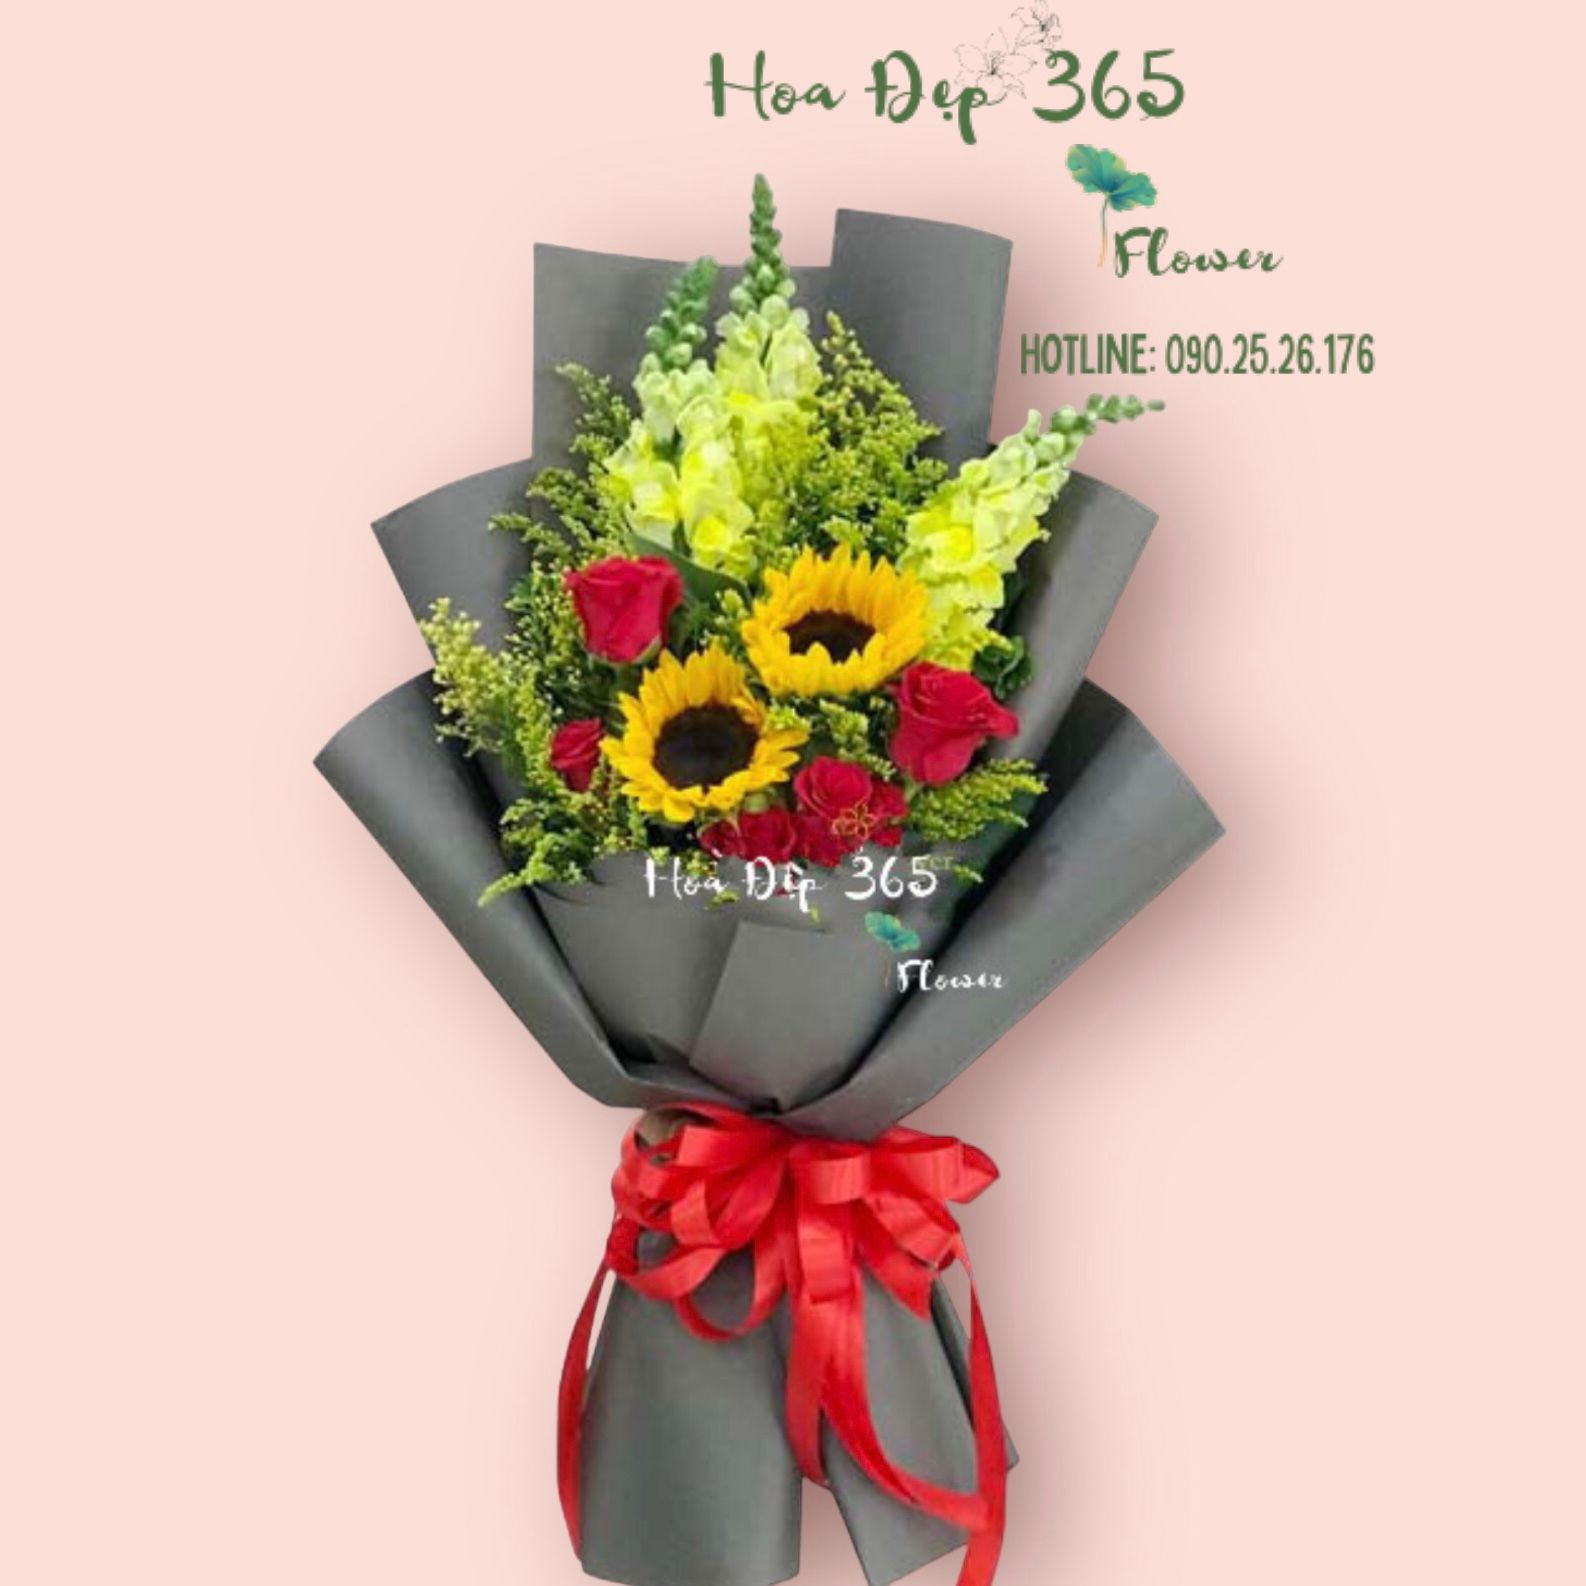  Ban Mai - HBD113 - Hoa 20/11 - Hoa hướng dương, hoa hồng đỏ, hoa mõm sói 